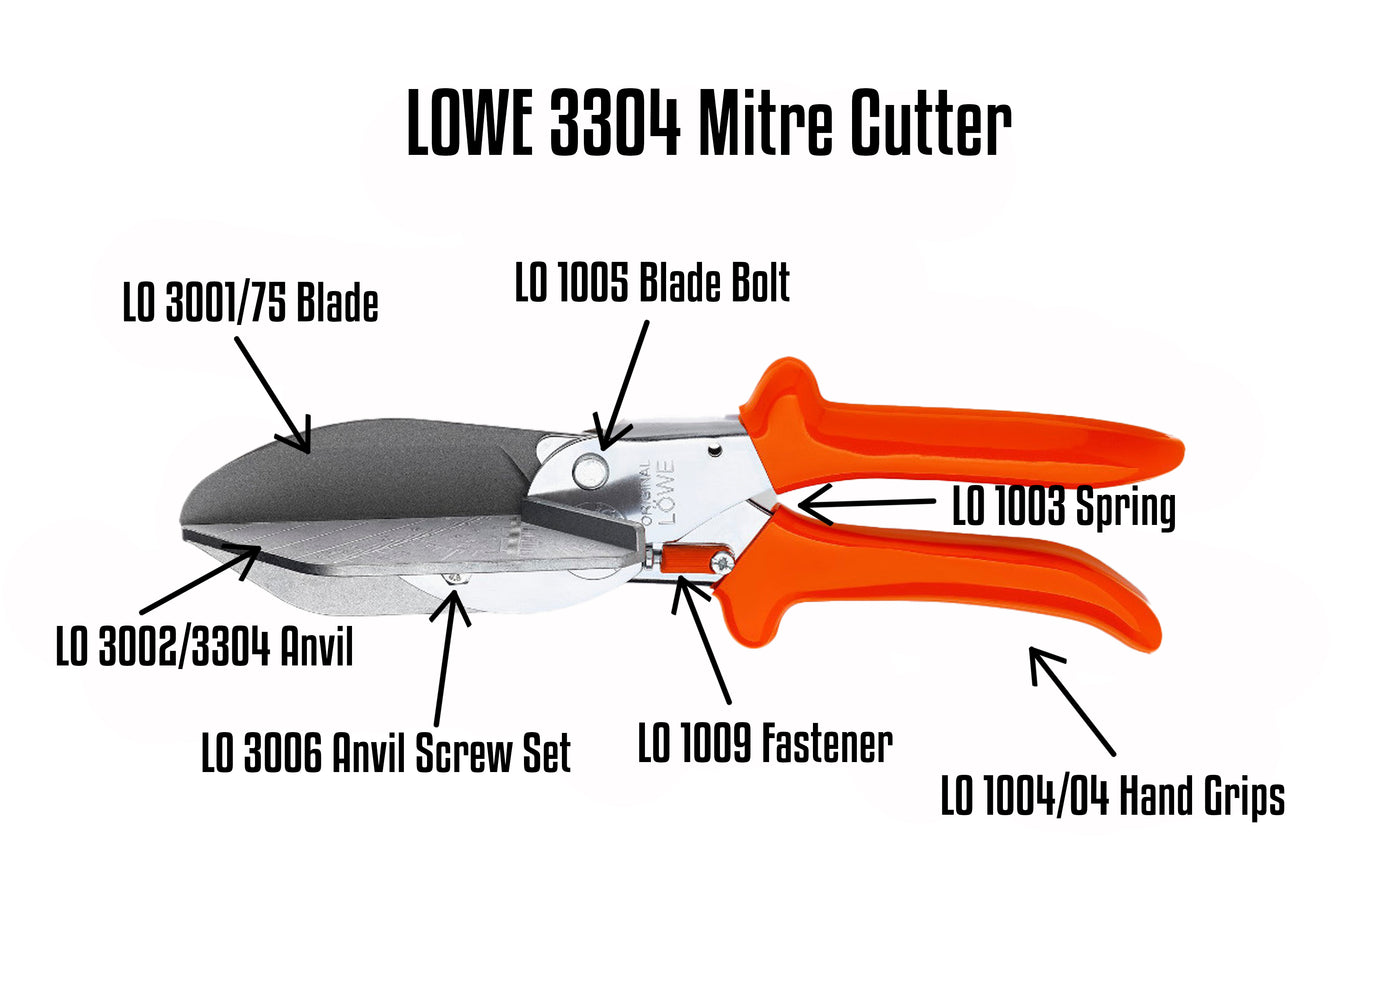 Lowe 3304 Mitre Cutter